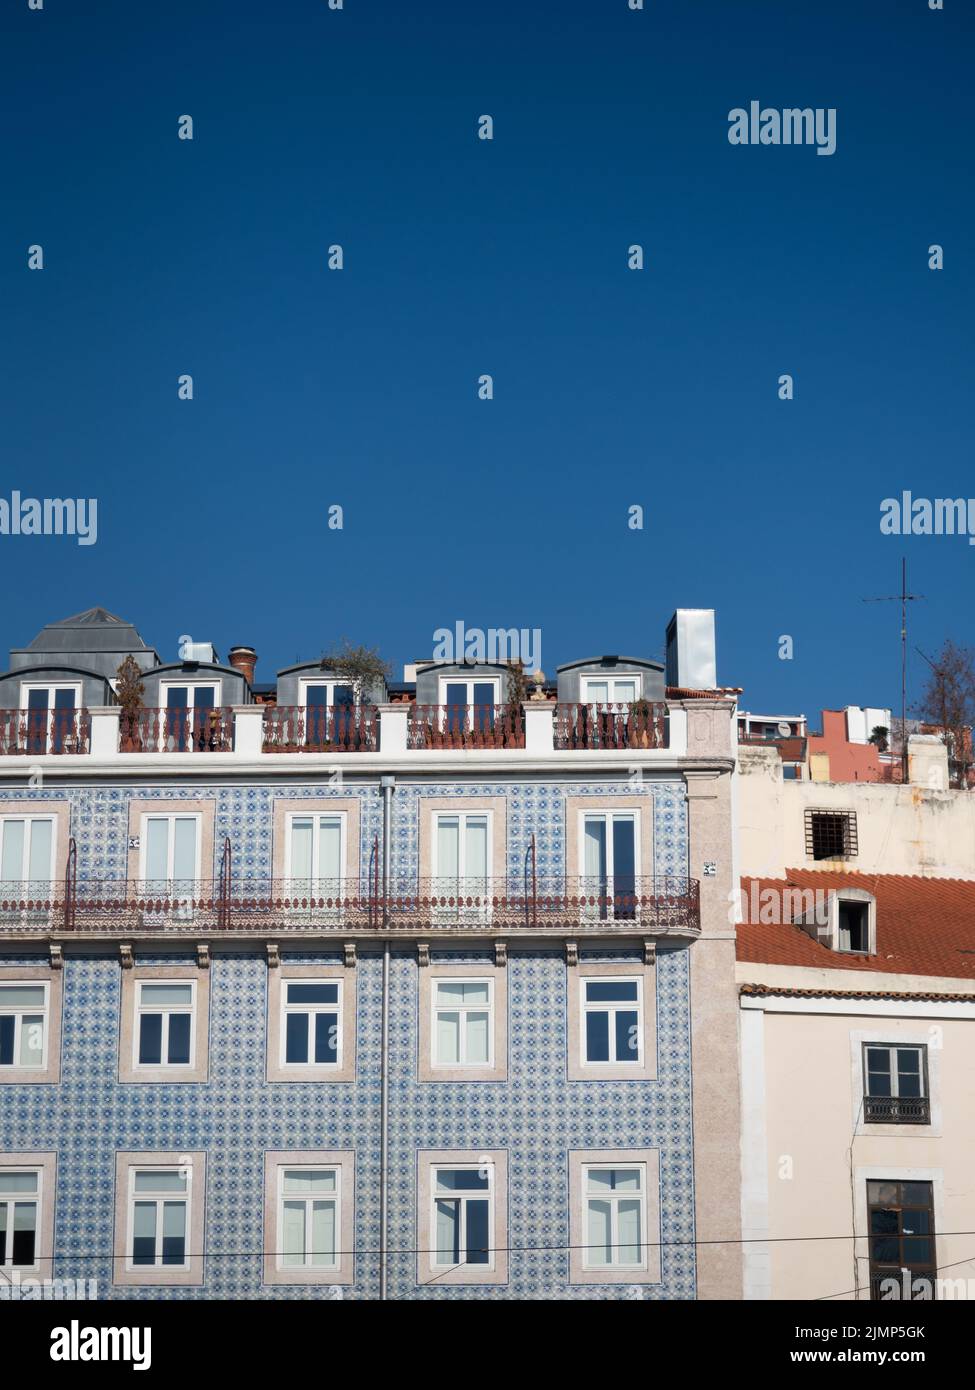 Wohngebäude mit blauen Azulejos-Fliesen, Lissabon, Portugal Stockfoto